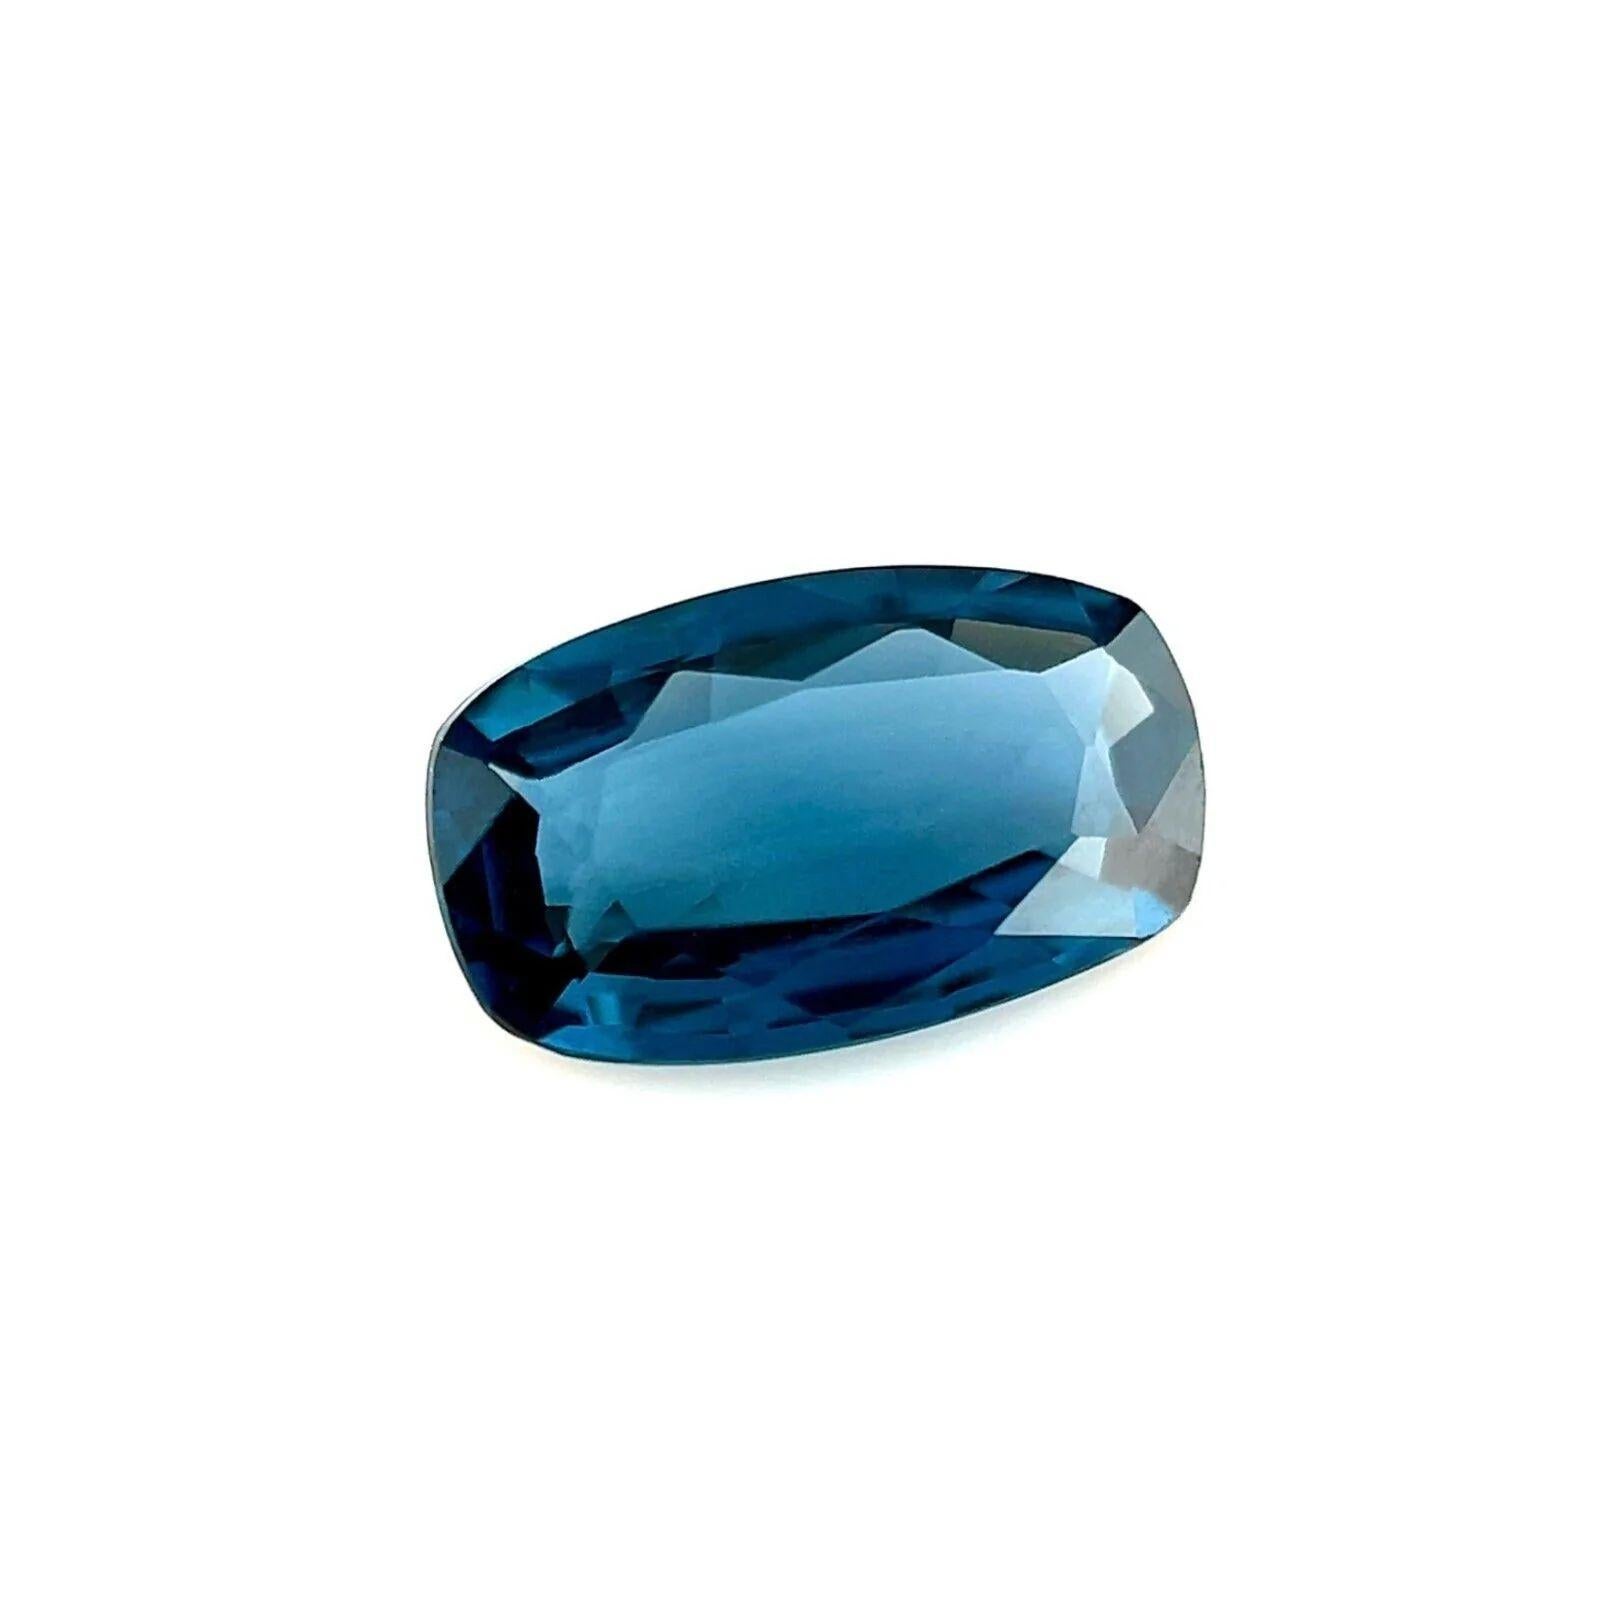 Fine pierre précieuse naturelle bleu profond 1.04ct coupe coussin 8.4x4mm en vrac rare

Pierre précieuse Spinel bleu vif naturelle.
Magnifique spinelle naturel de 1,04 carat d'un bleu vif et d'une excellente clarté.
Pierre très propre, possède